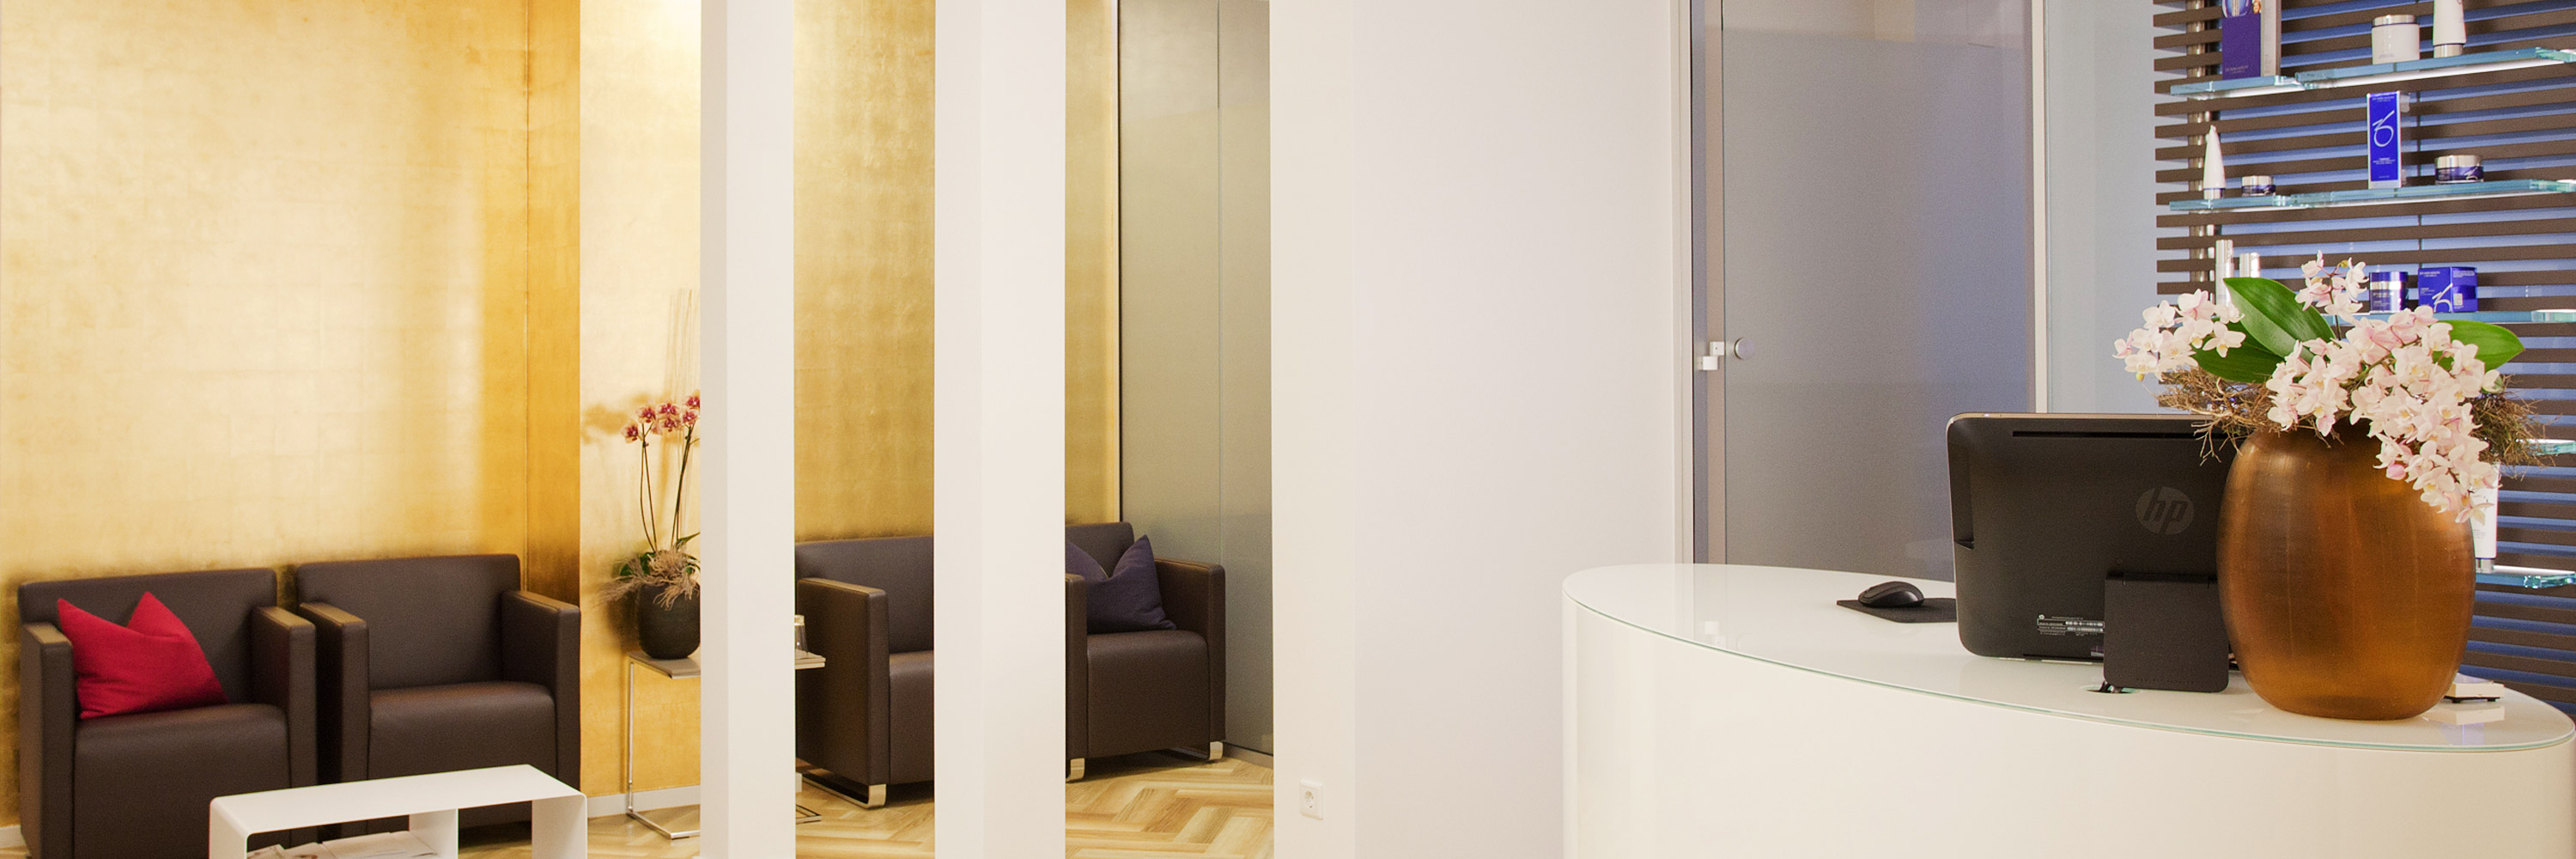 Empfangsraum des Instituts für Hautpflege und Hautbehandlungen in Frankfurt am Main. Im Vordergrund eine Empfangstheke mit frischen Blumen und Monitor. Im Hintergrund dunkle weiche Sessel. Die Wand hinter den Sesseln ist in Gold.